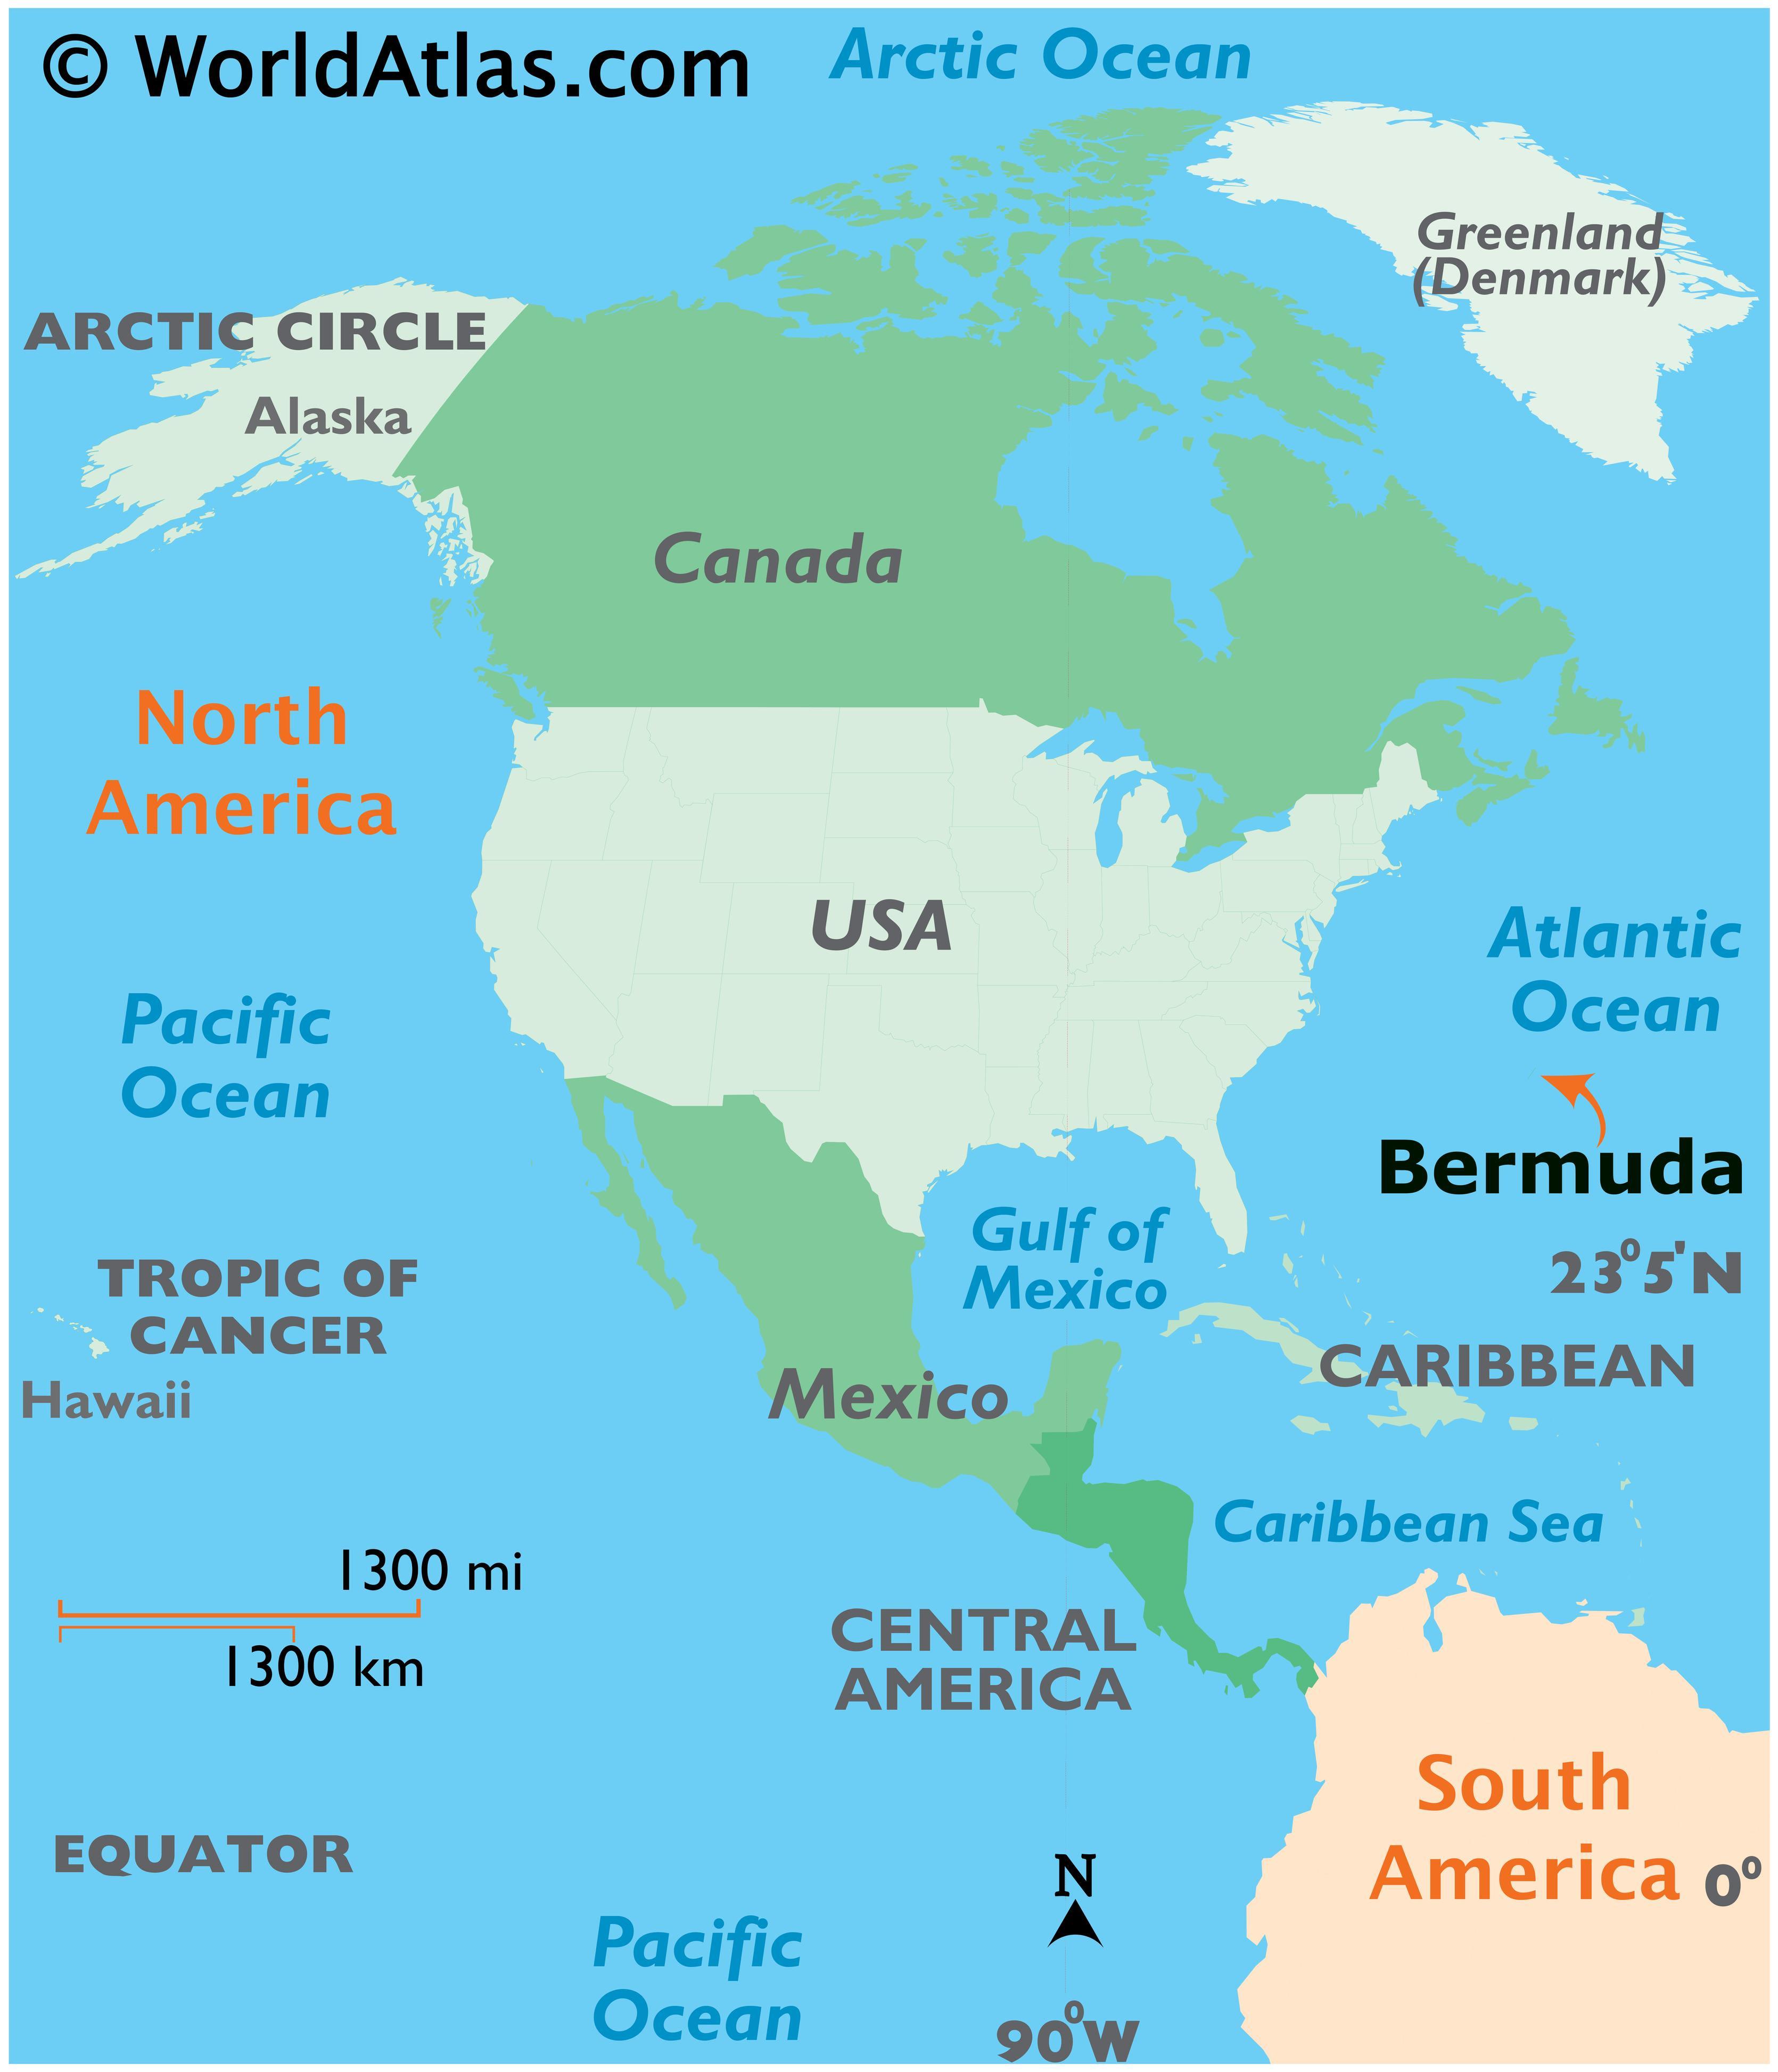 Atlantic Ocean Bermuda Map 